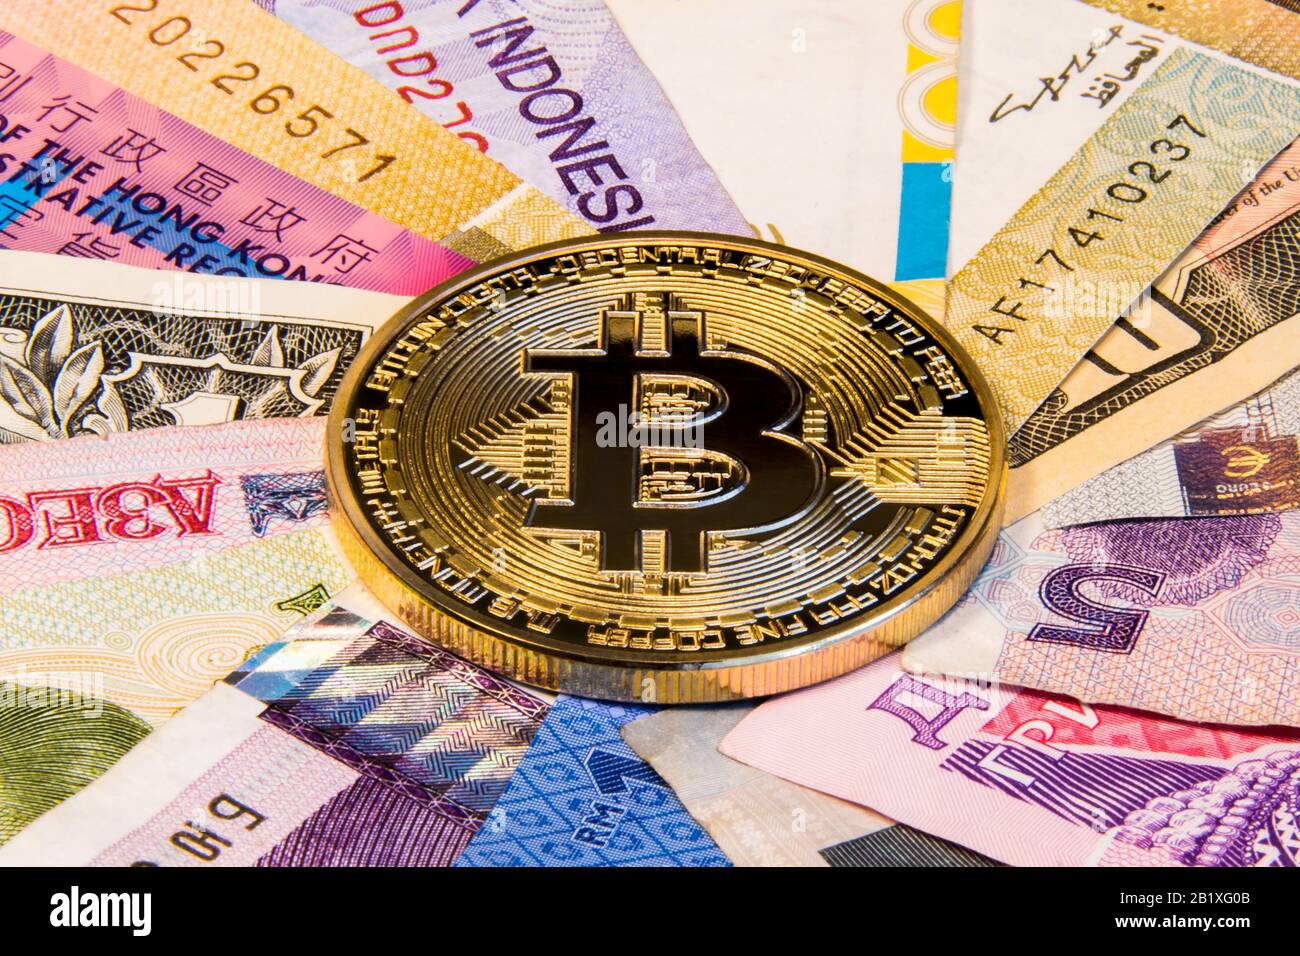 Cryptocurrency konzeptionelles Bild des Bitcoin-Internationalismus. Bitcoin-Bitcoin-Bitcoin auf den Banknoten verschiedener Länder. Stockfoto